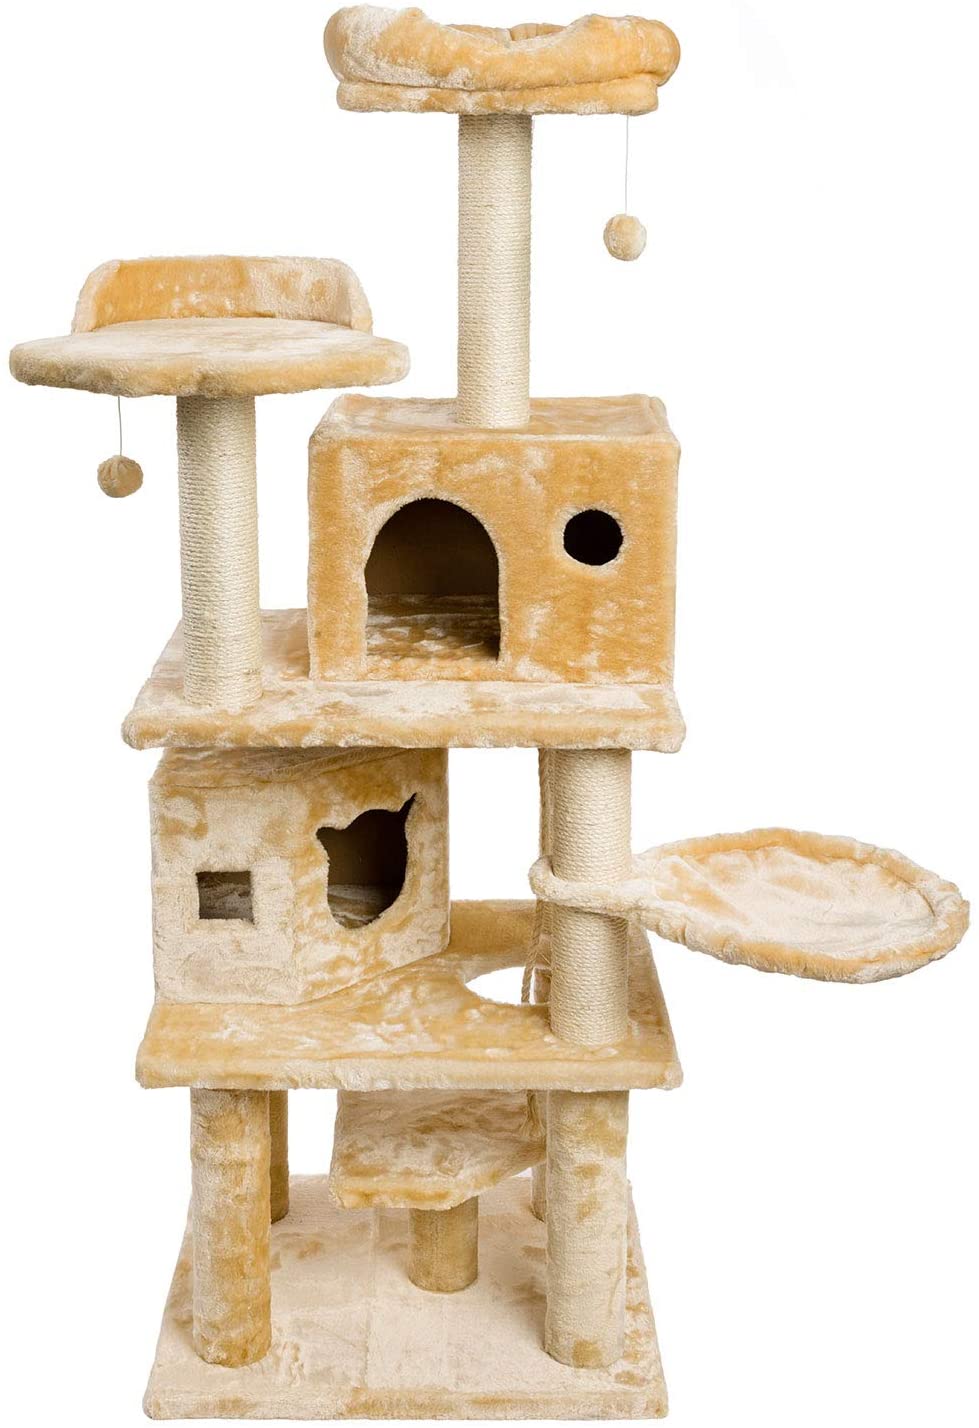 Katzen Kratzbaum in Luxus-Qualität - groß, stabil, elegant